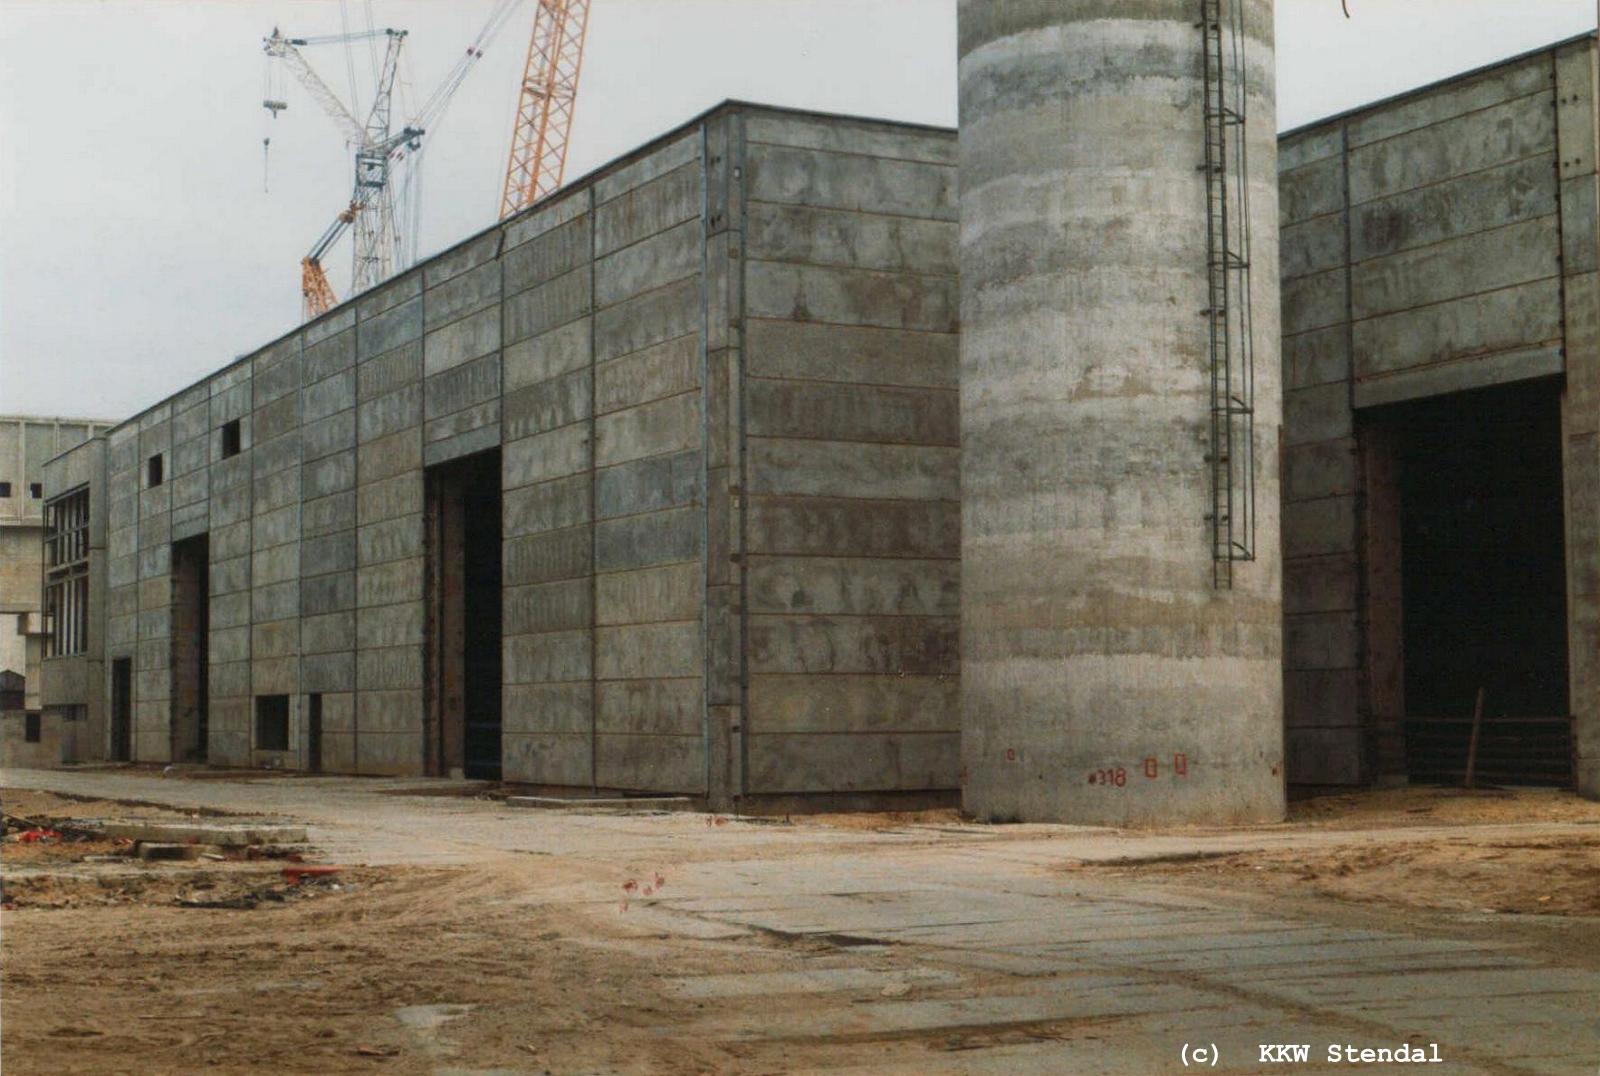  KKW Stendal, Baustelle 1990, ZAW Zentrale Aktive Werkstatt, Lüfterhalle 